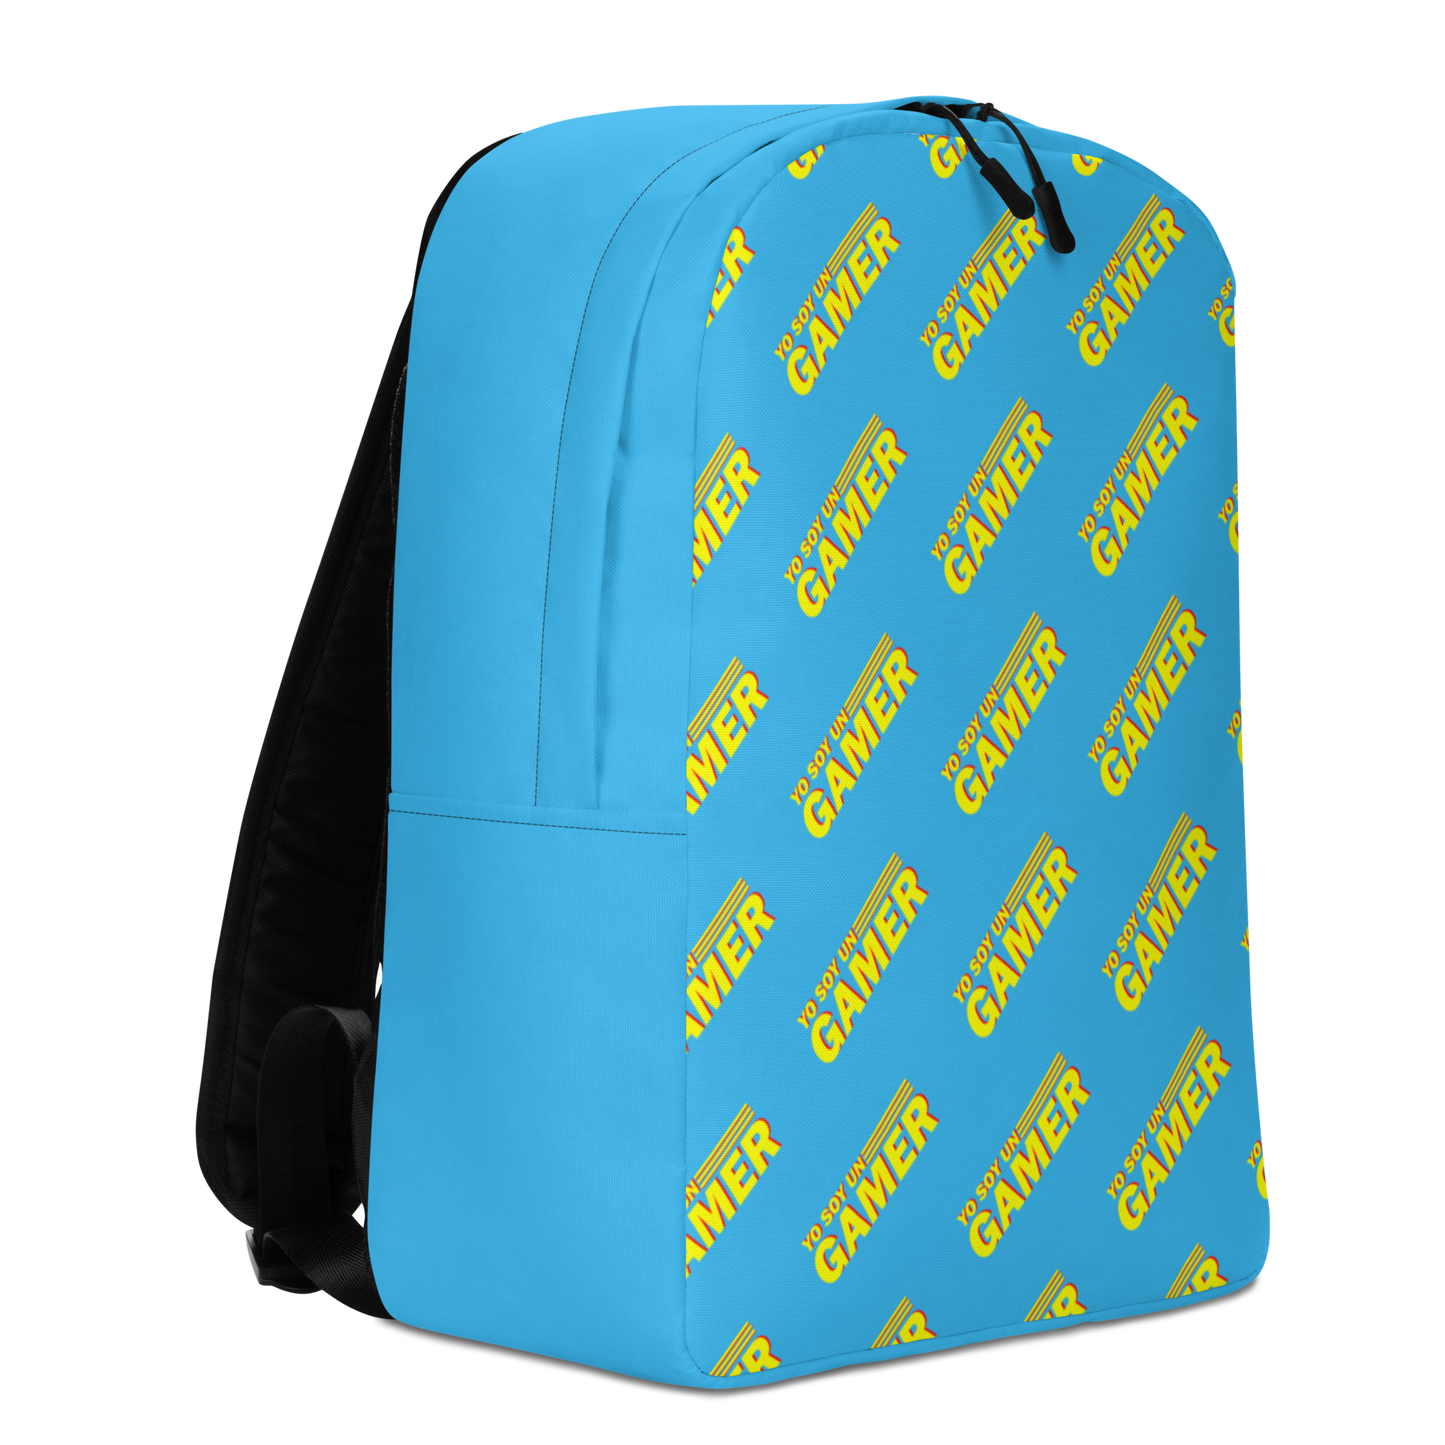 YSUG Power - Backpack